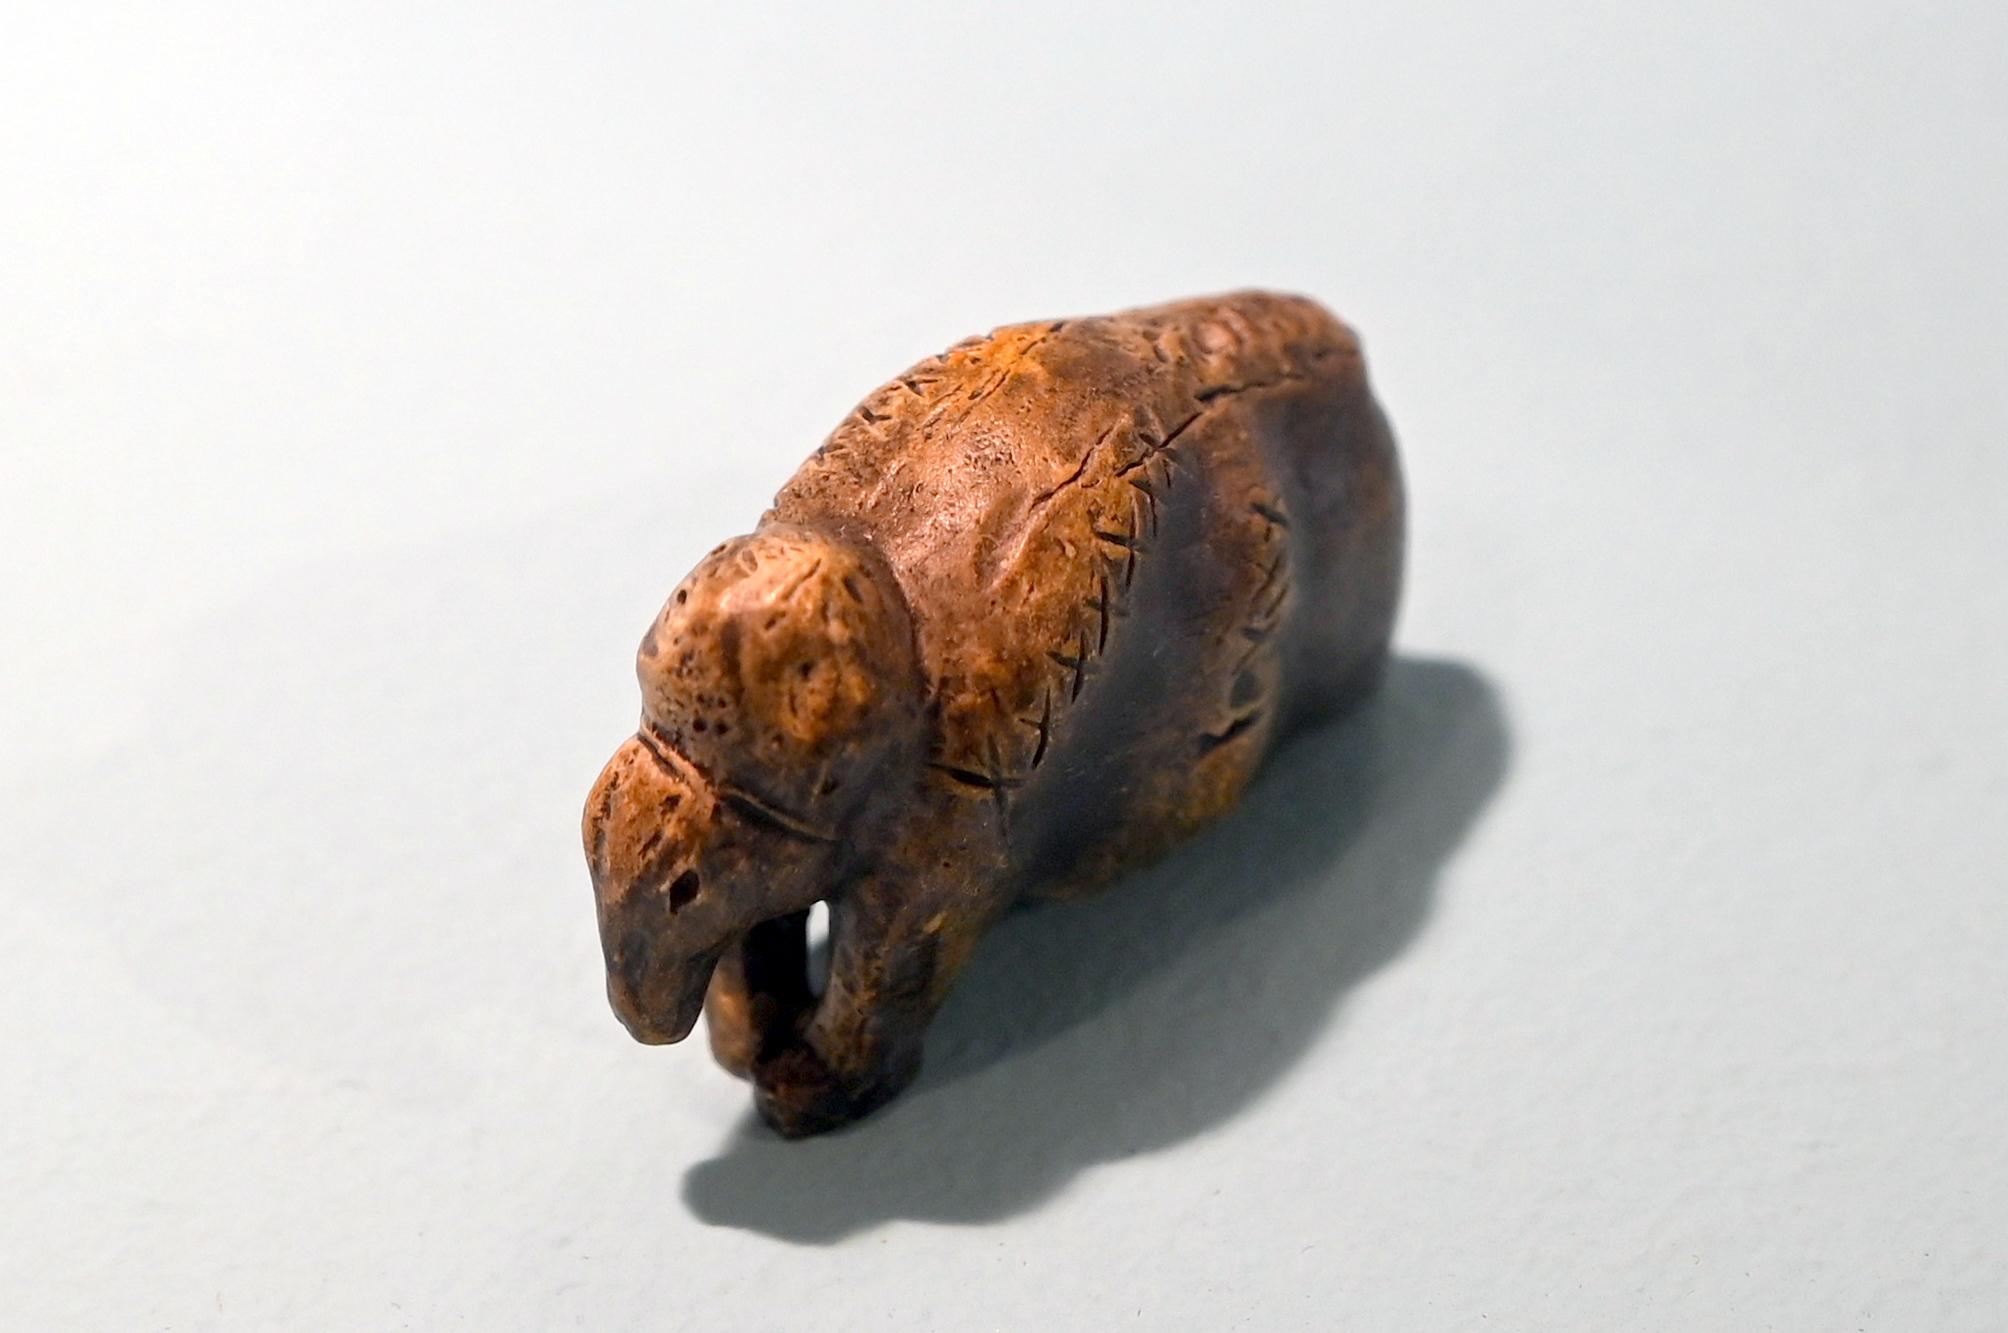 Mammut (Kopie), 33000 v. Chr., Bild 1/2